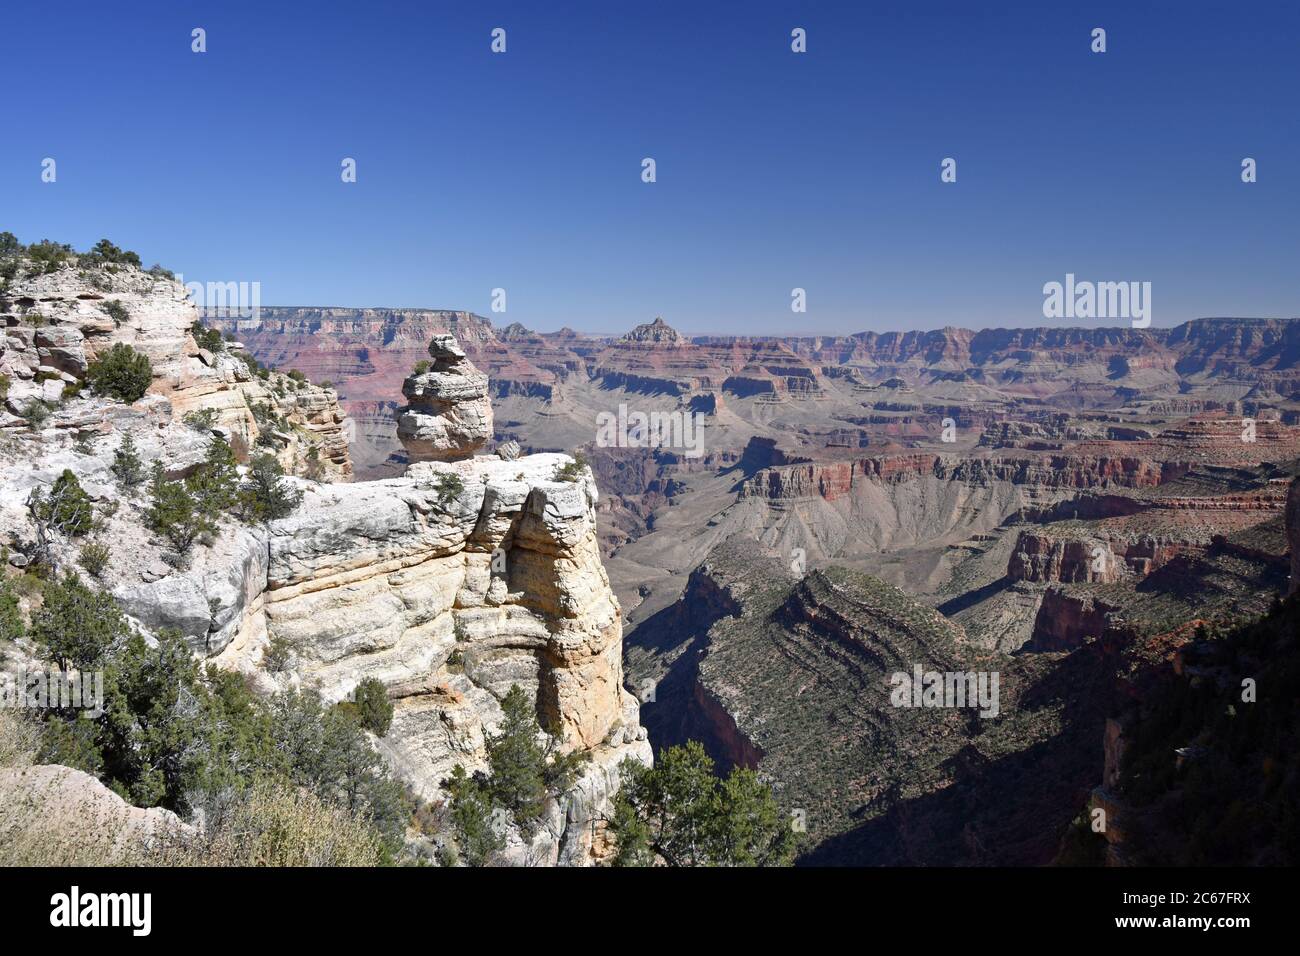 Wüstenblick Drive Felsformation: Ente auf einem Felsen. Der Grand Canyon ist im Hintergrund zu sehen. Blauer Himmel und roter Fels in der Schlucht. Stockfoto